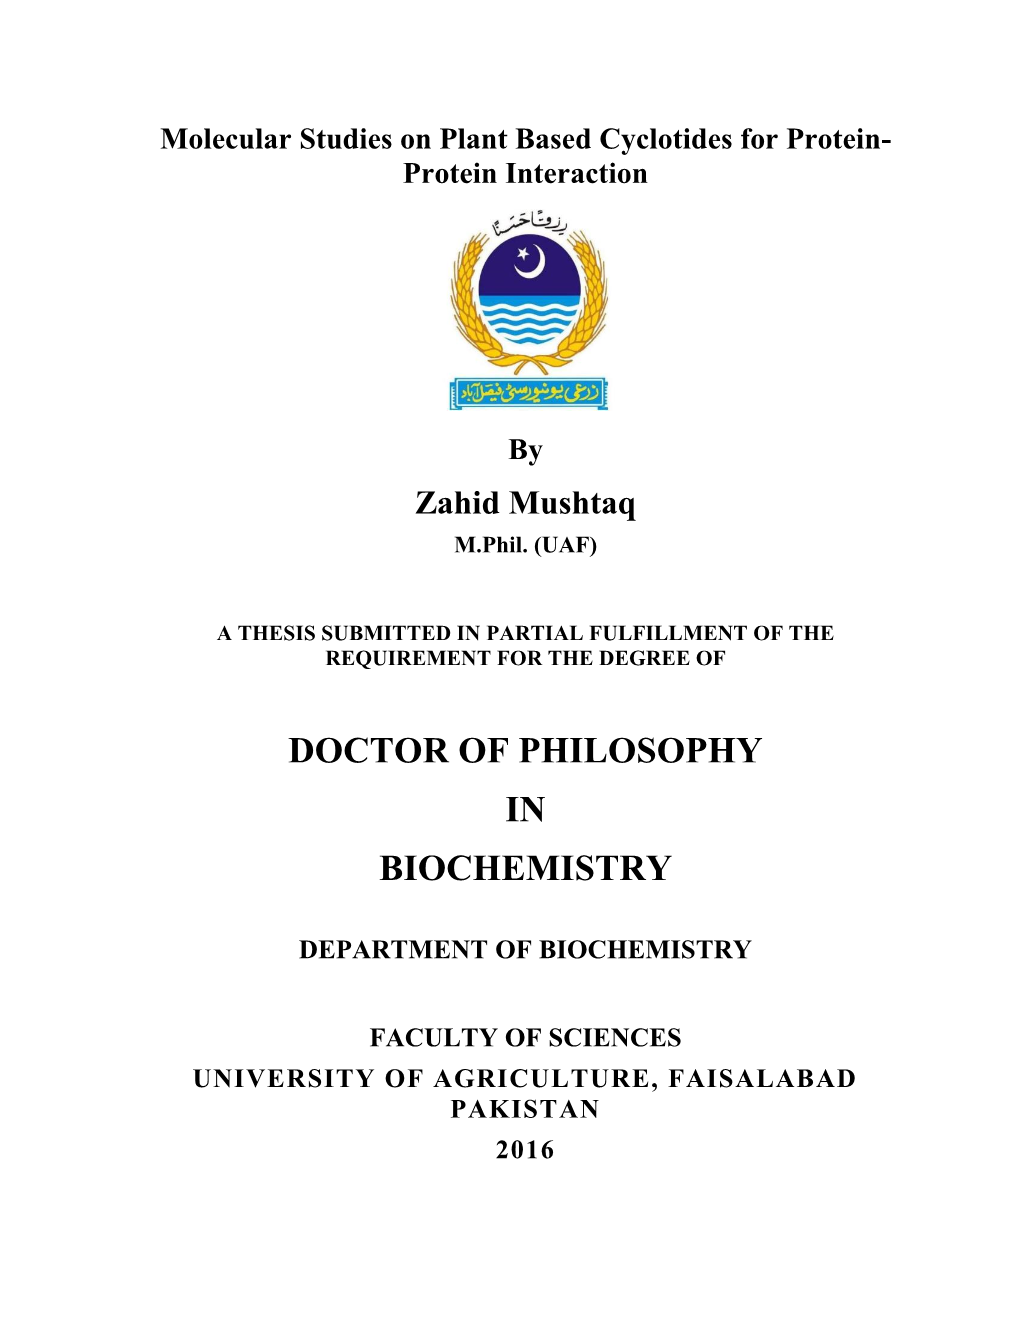 Doctor of Philosophy in Biochemistry